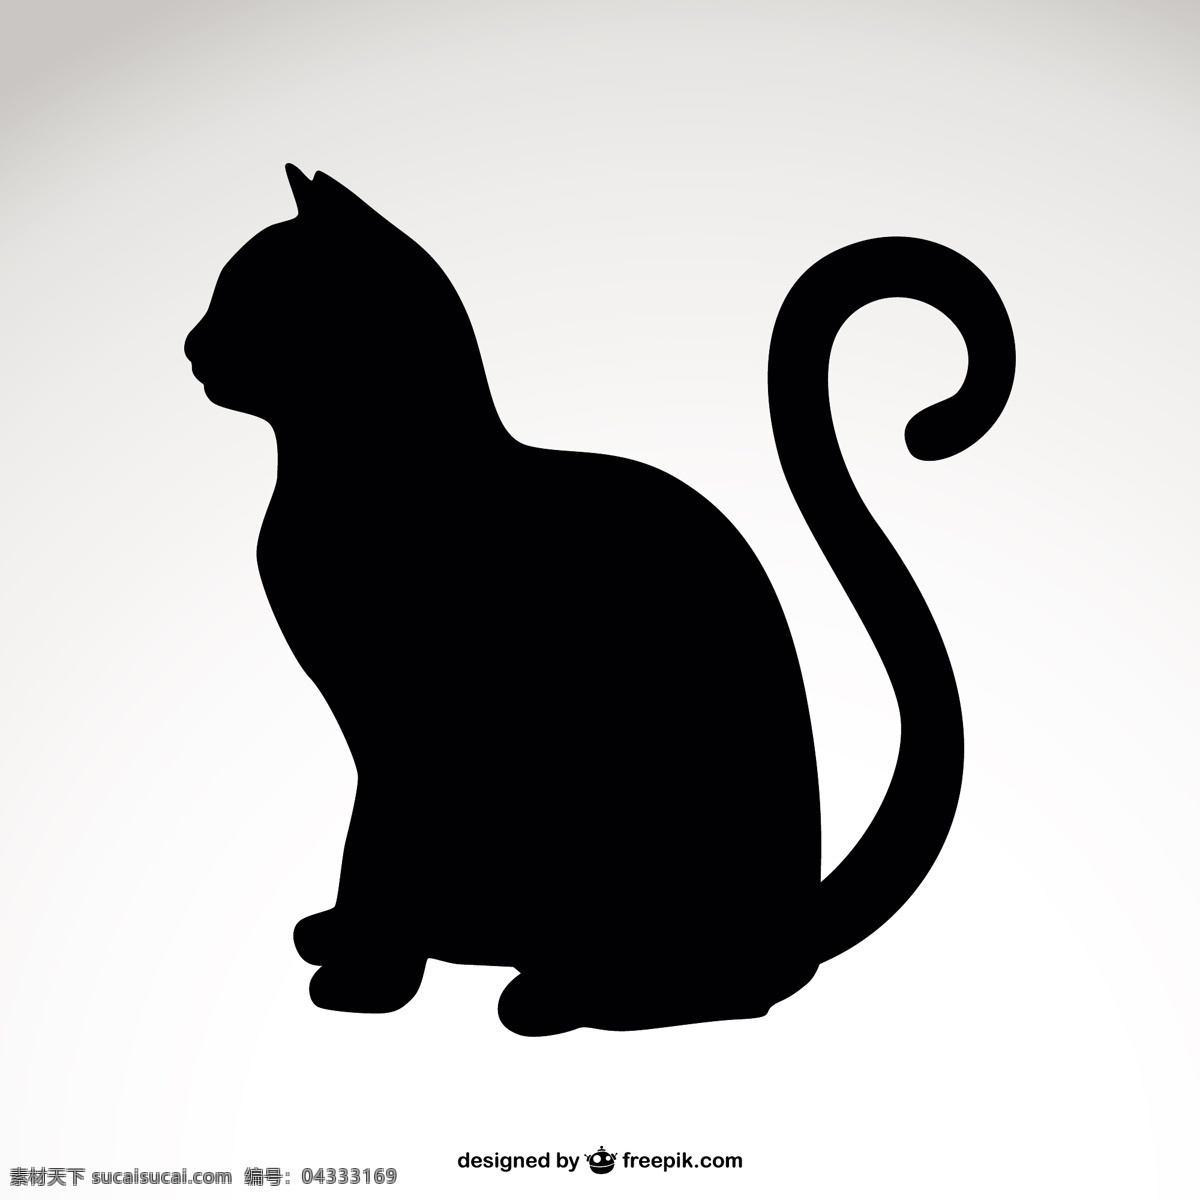 猫的剪影 模板 猫 动物 图形 轮廓 布局 符号 图形设计 黑色 宠物 形状 插图 设计元素 简单 元素 白色